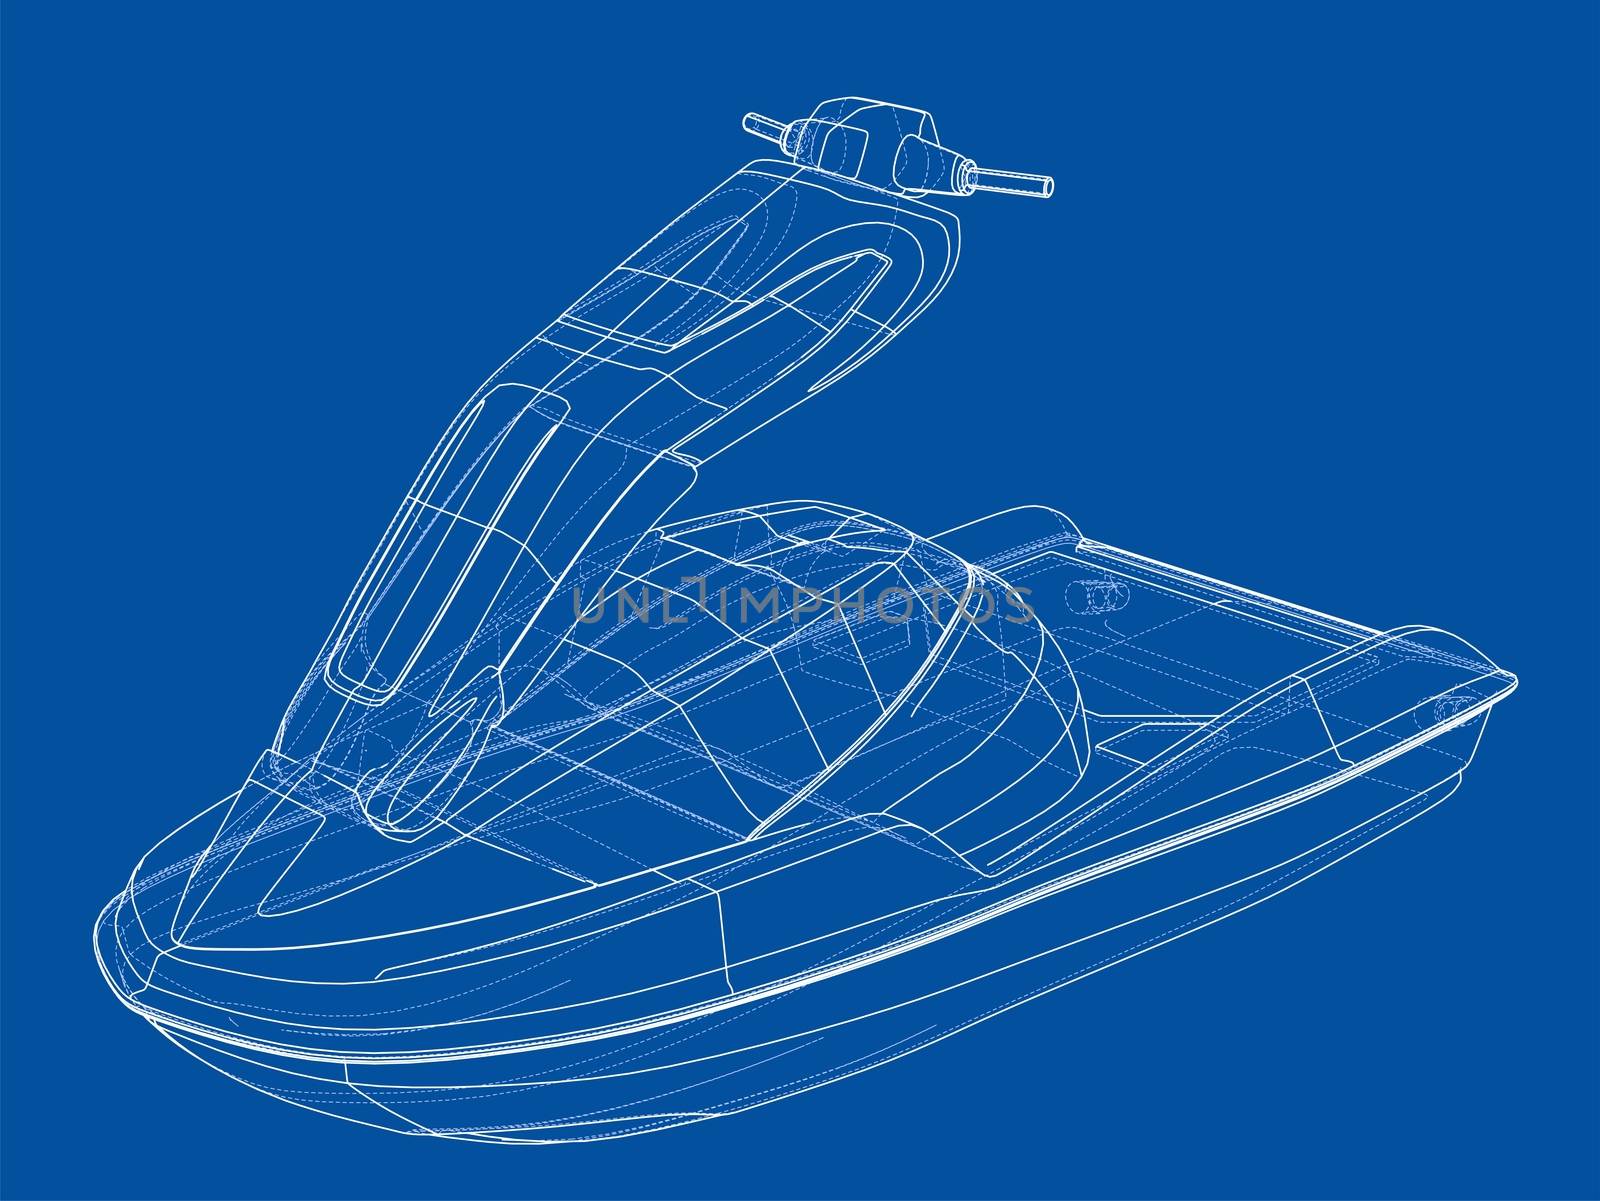 Jet ski sketch. 3d illustration by cherezoff